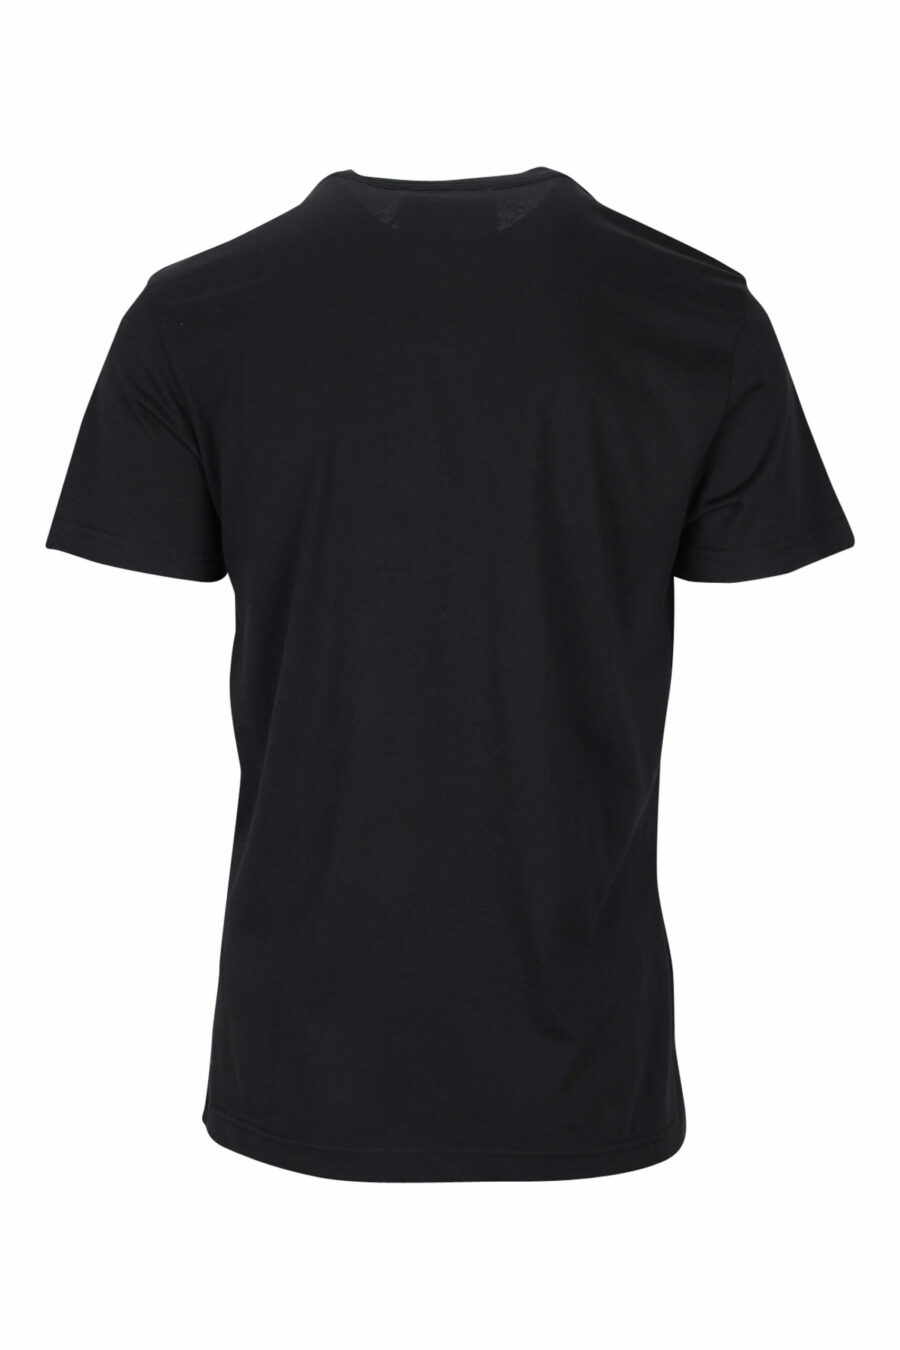 T-shirt preta com maxilogue clássico dourado brilhante - 8052019456783 1 scaled